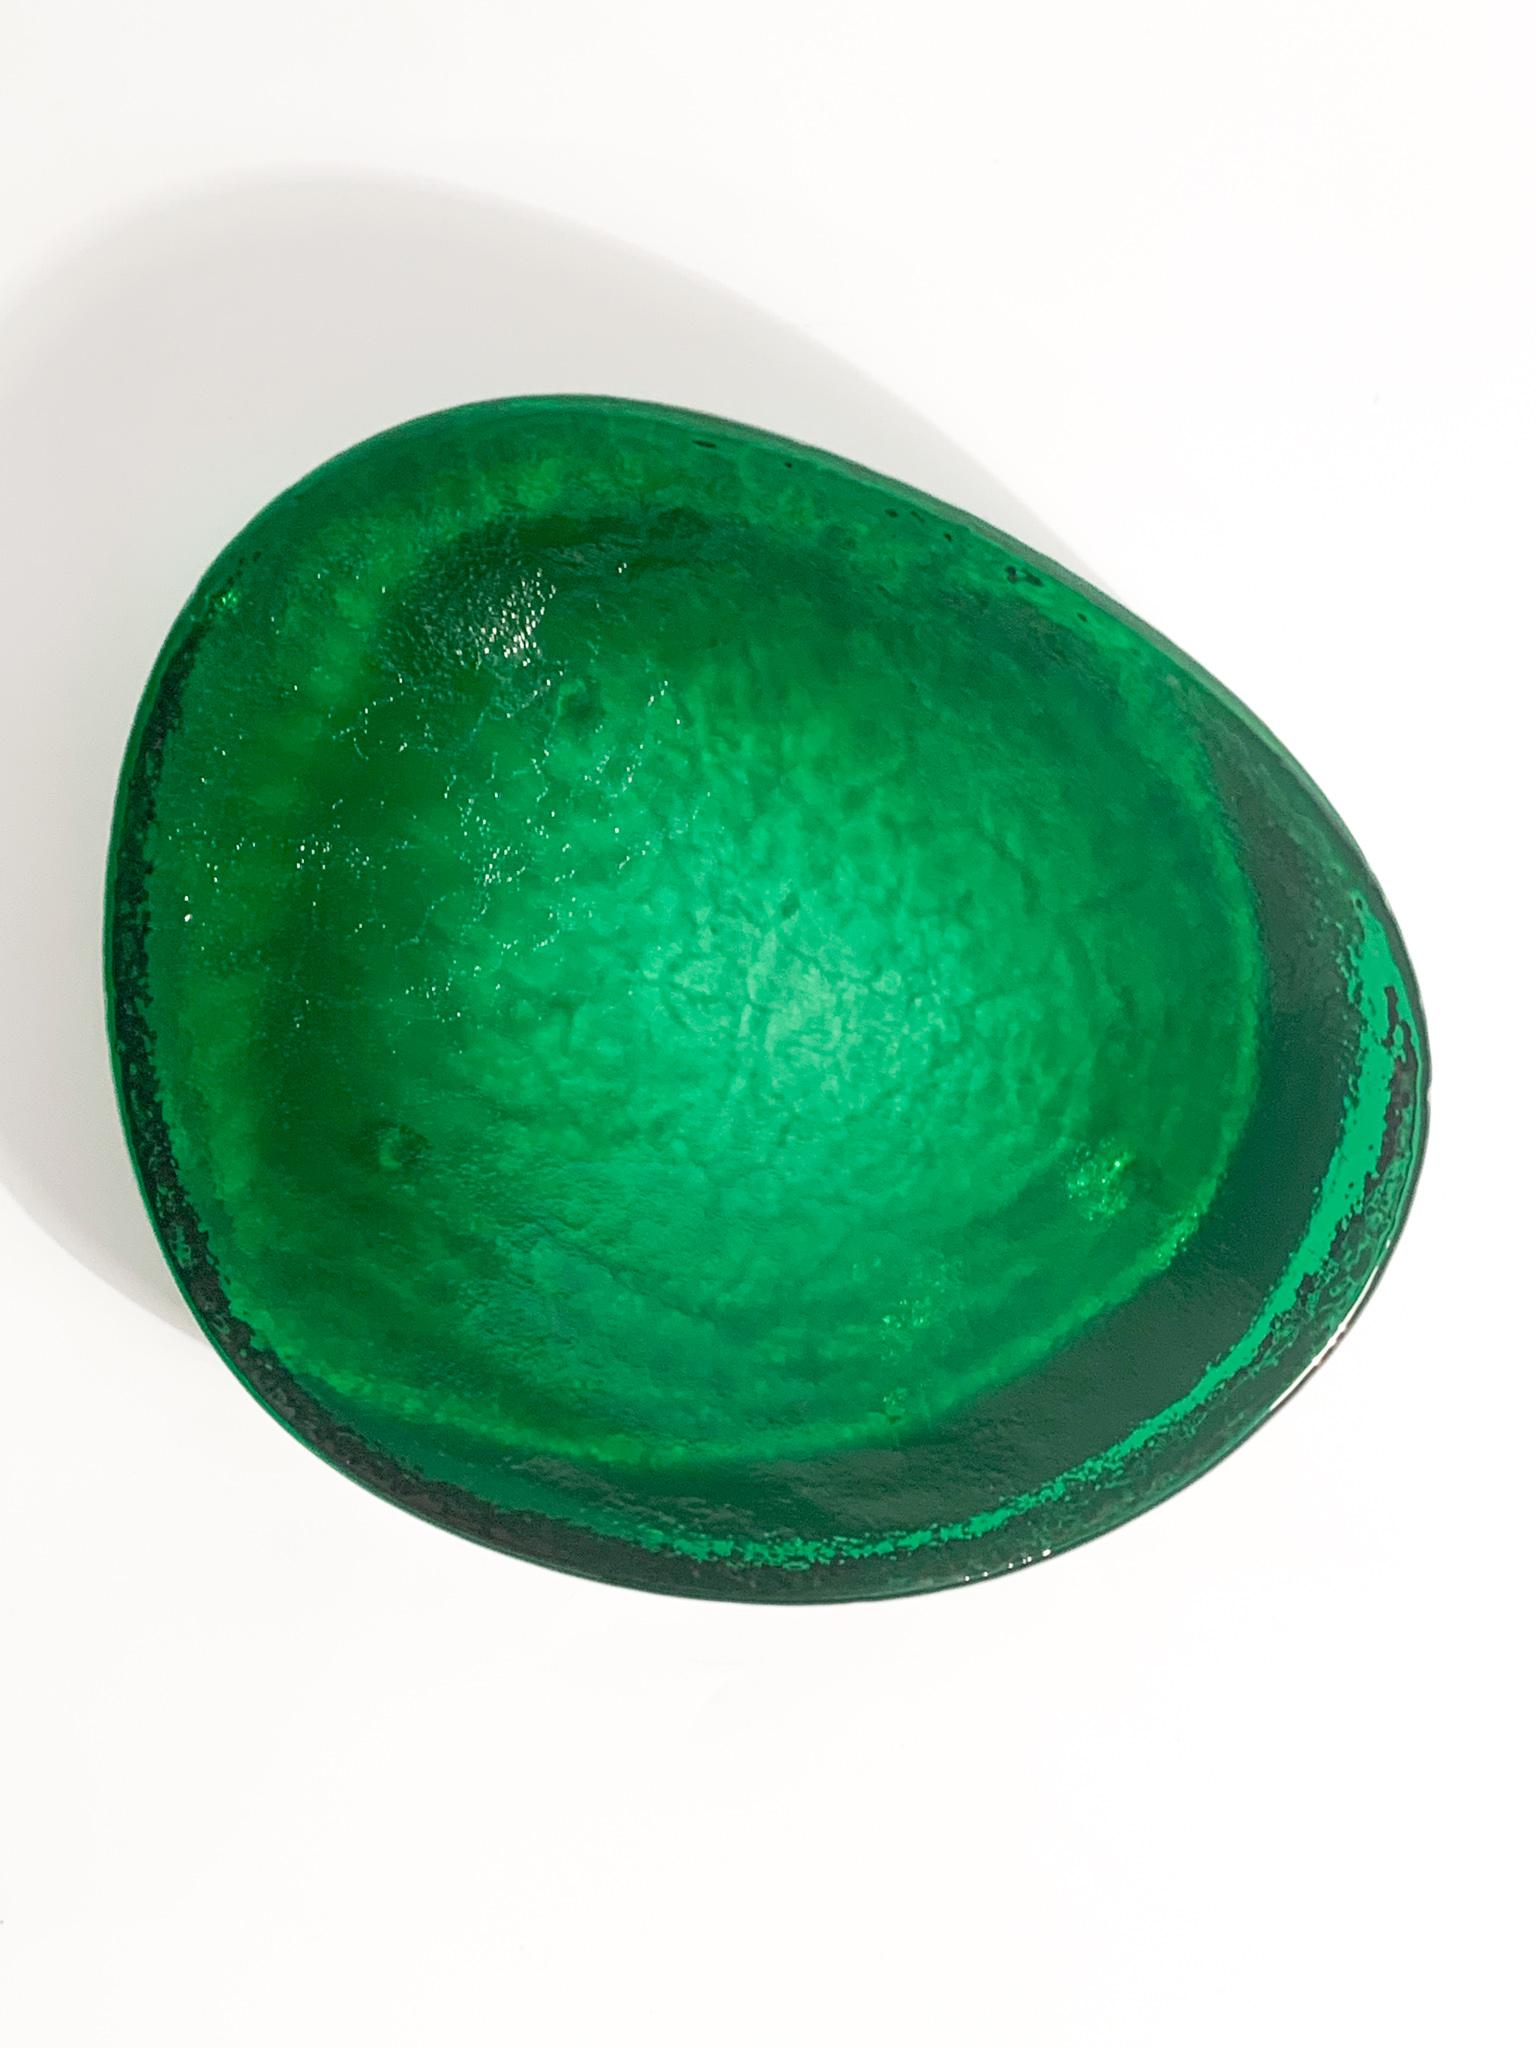 Bol vide-poche en verre de Murano vert, réalisé par Nason dans les années 1980.

Ø cm 18 Ø cm 15 h cm 3

Carlo Nason, né à Murano en 1935 d'une des plus anciennes familles de verriers de l'île, il était un grand maître verrier. Il grandit en